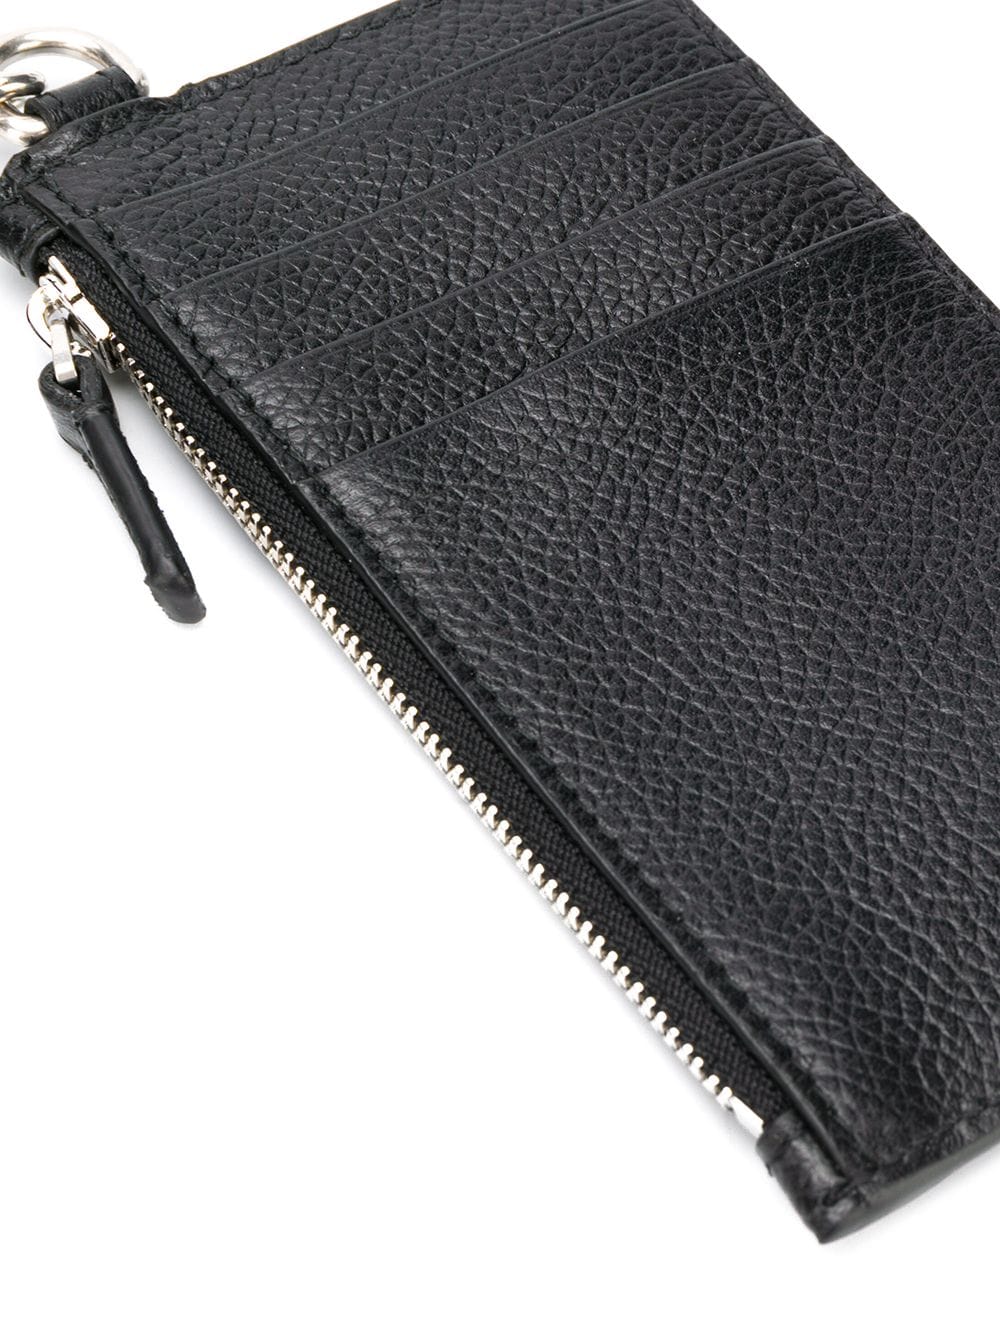 Balenciaga lanyard zip pouch wallet